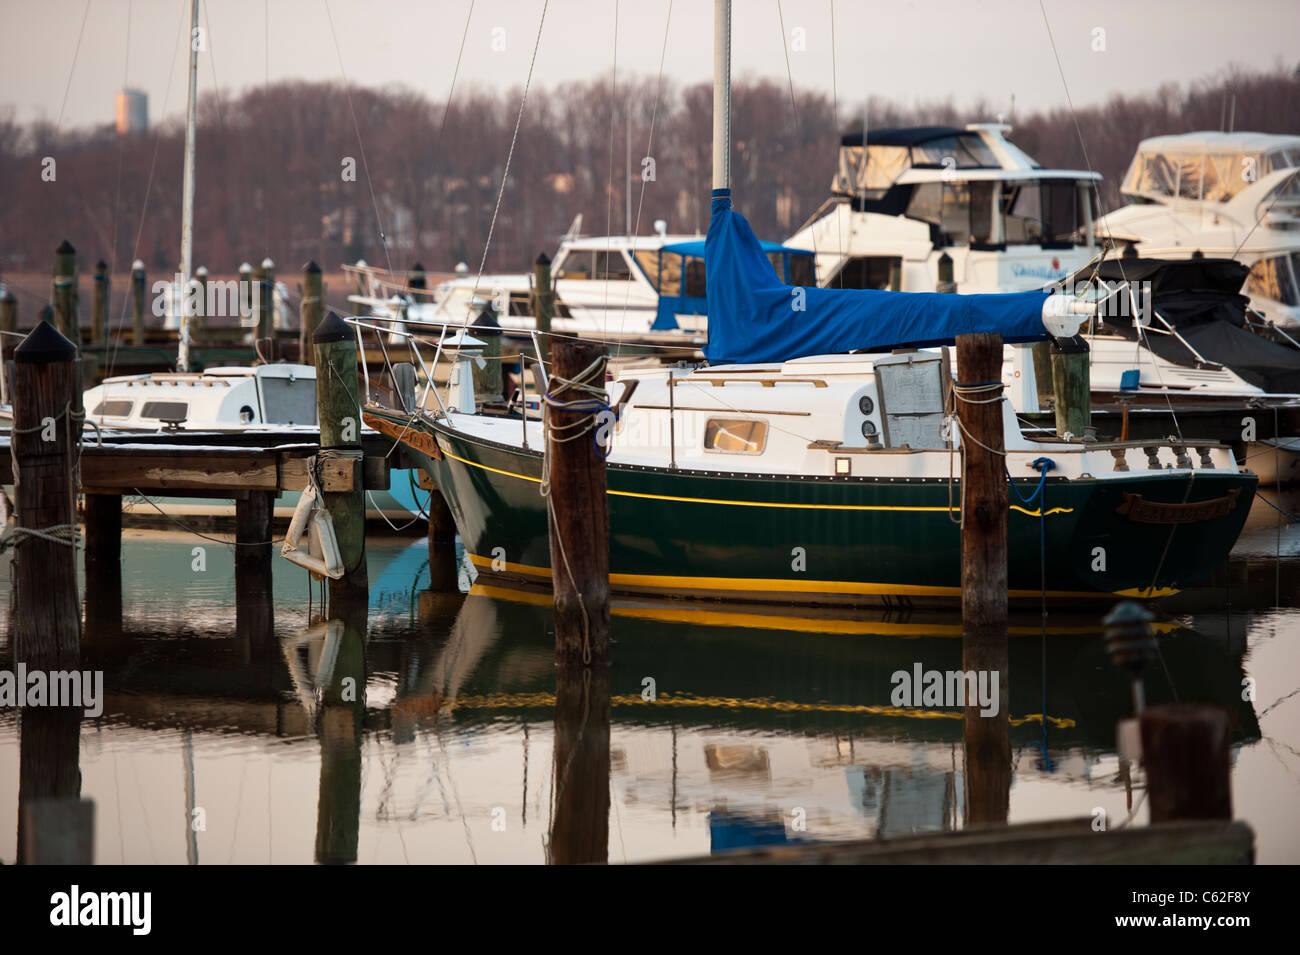 Boats docked in winter at a Virginia Marina Stock Photo